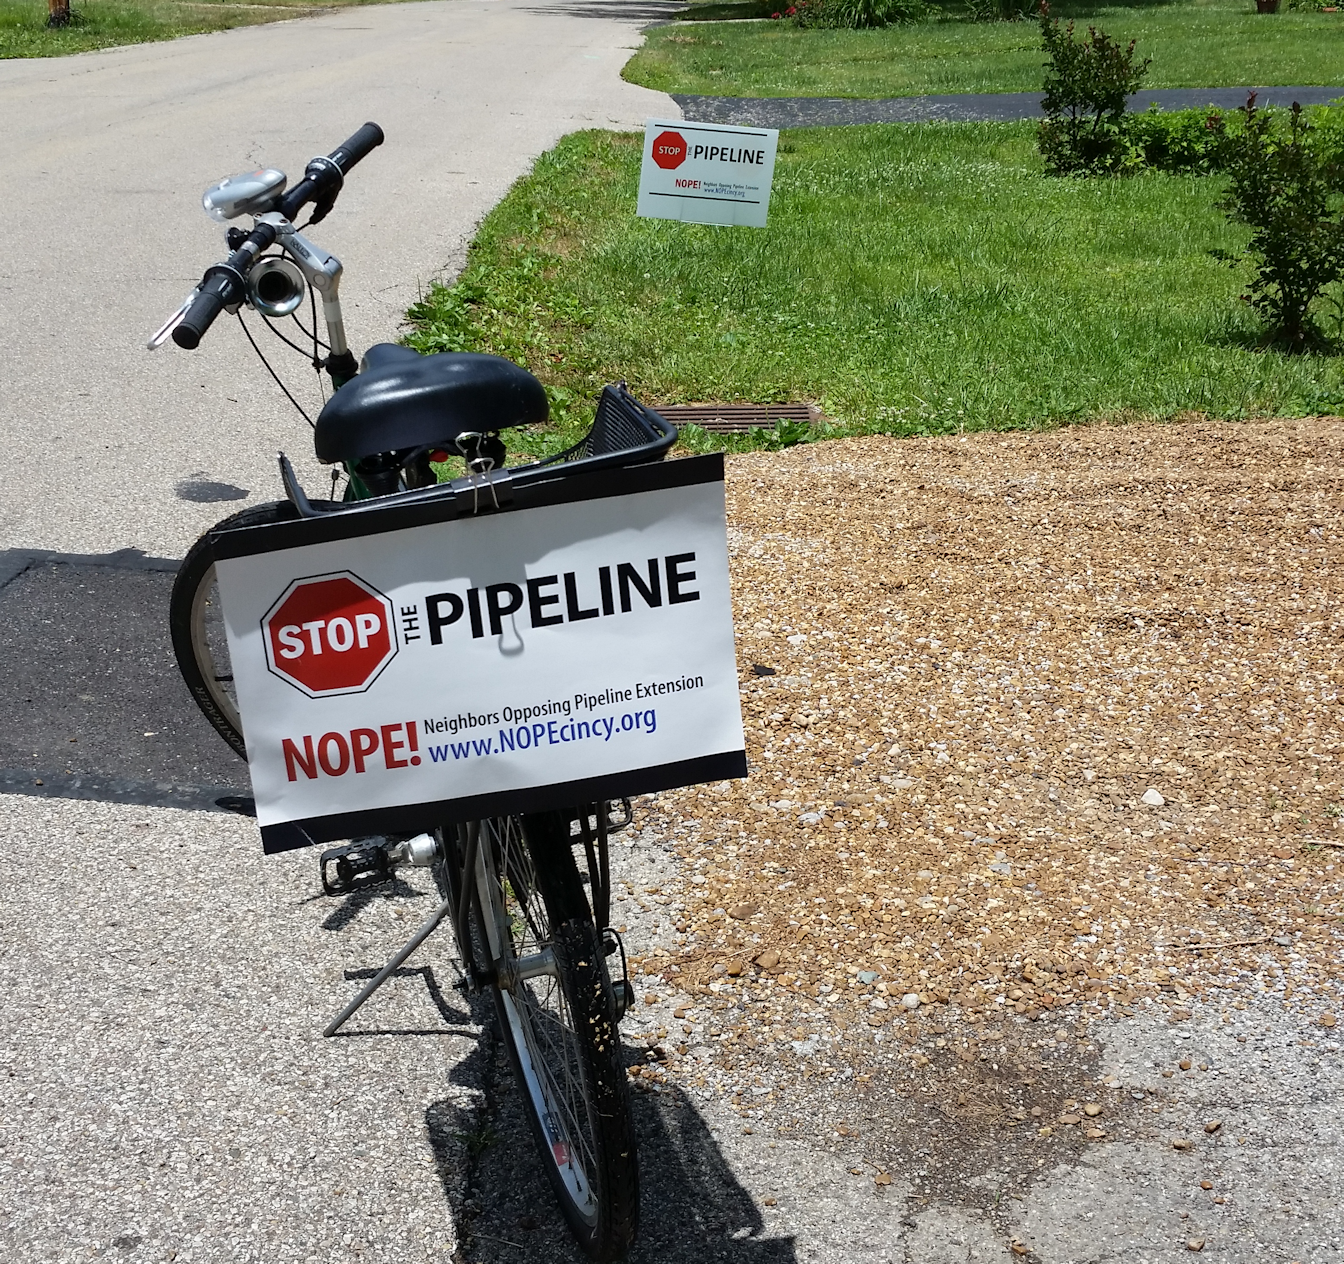 Duke_Pipeline_Bike.png